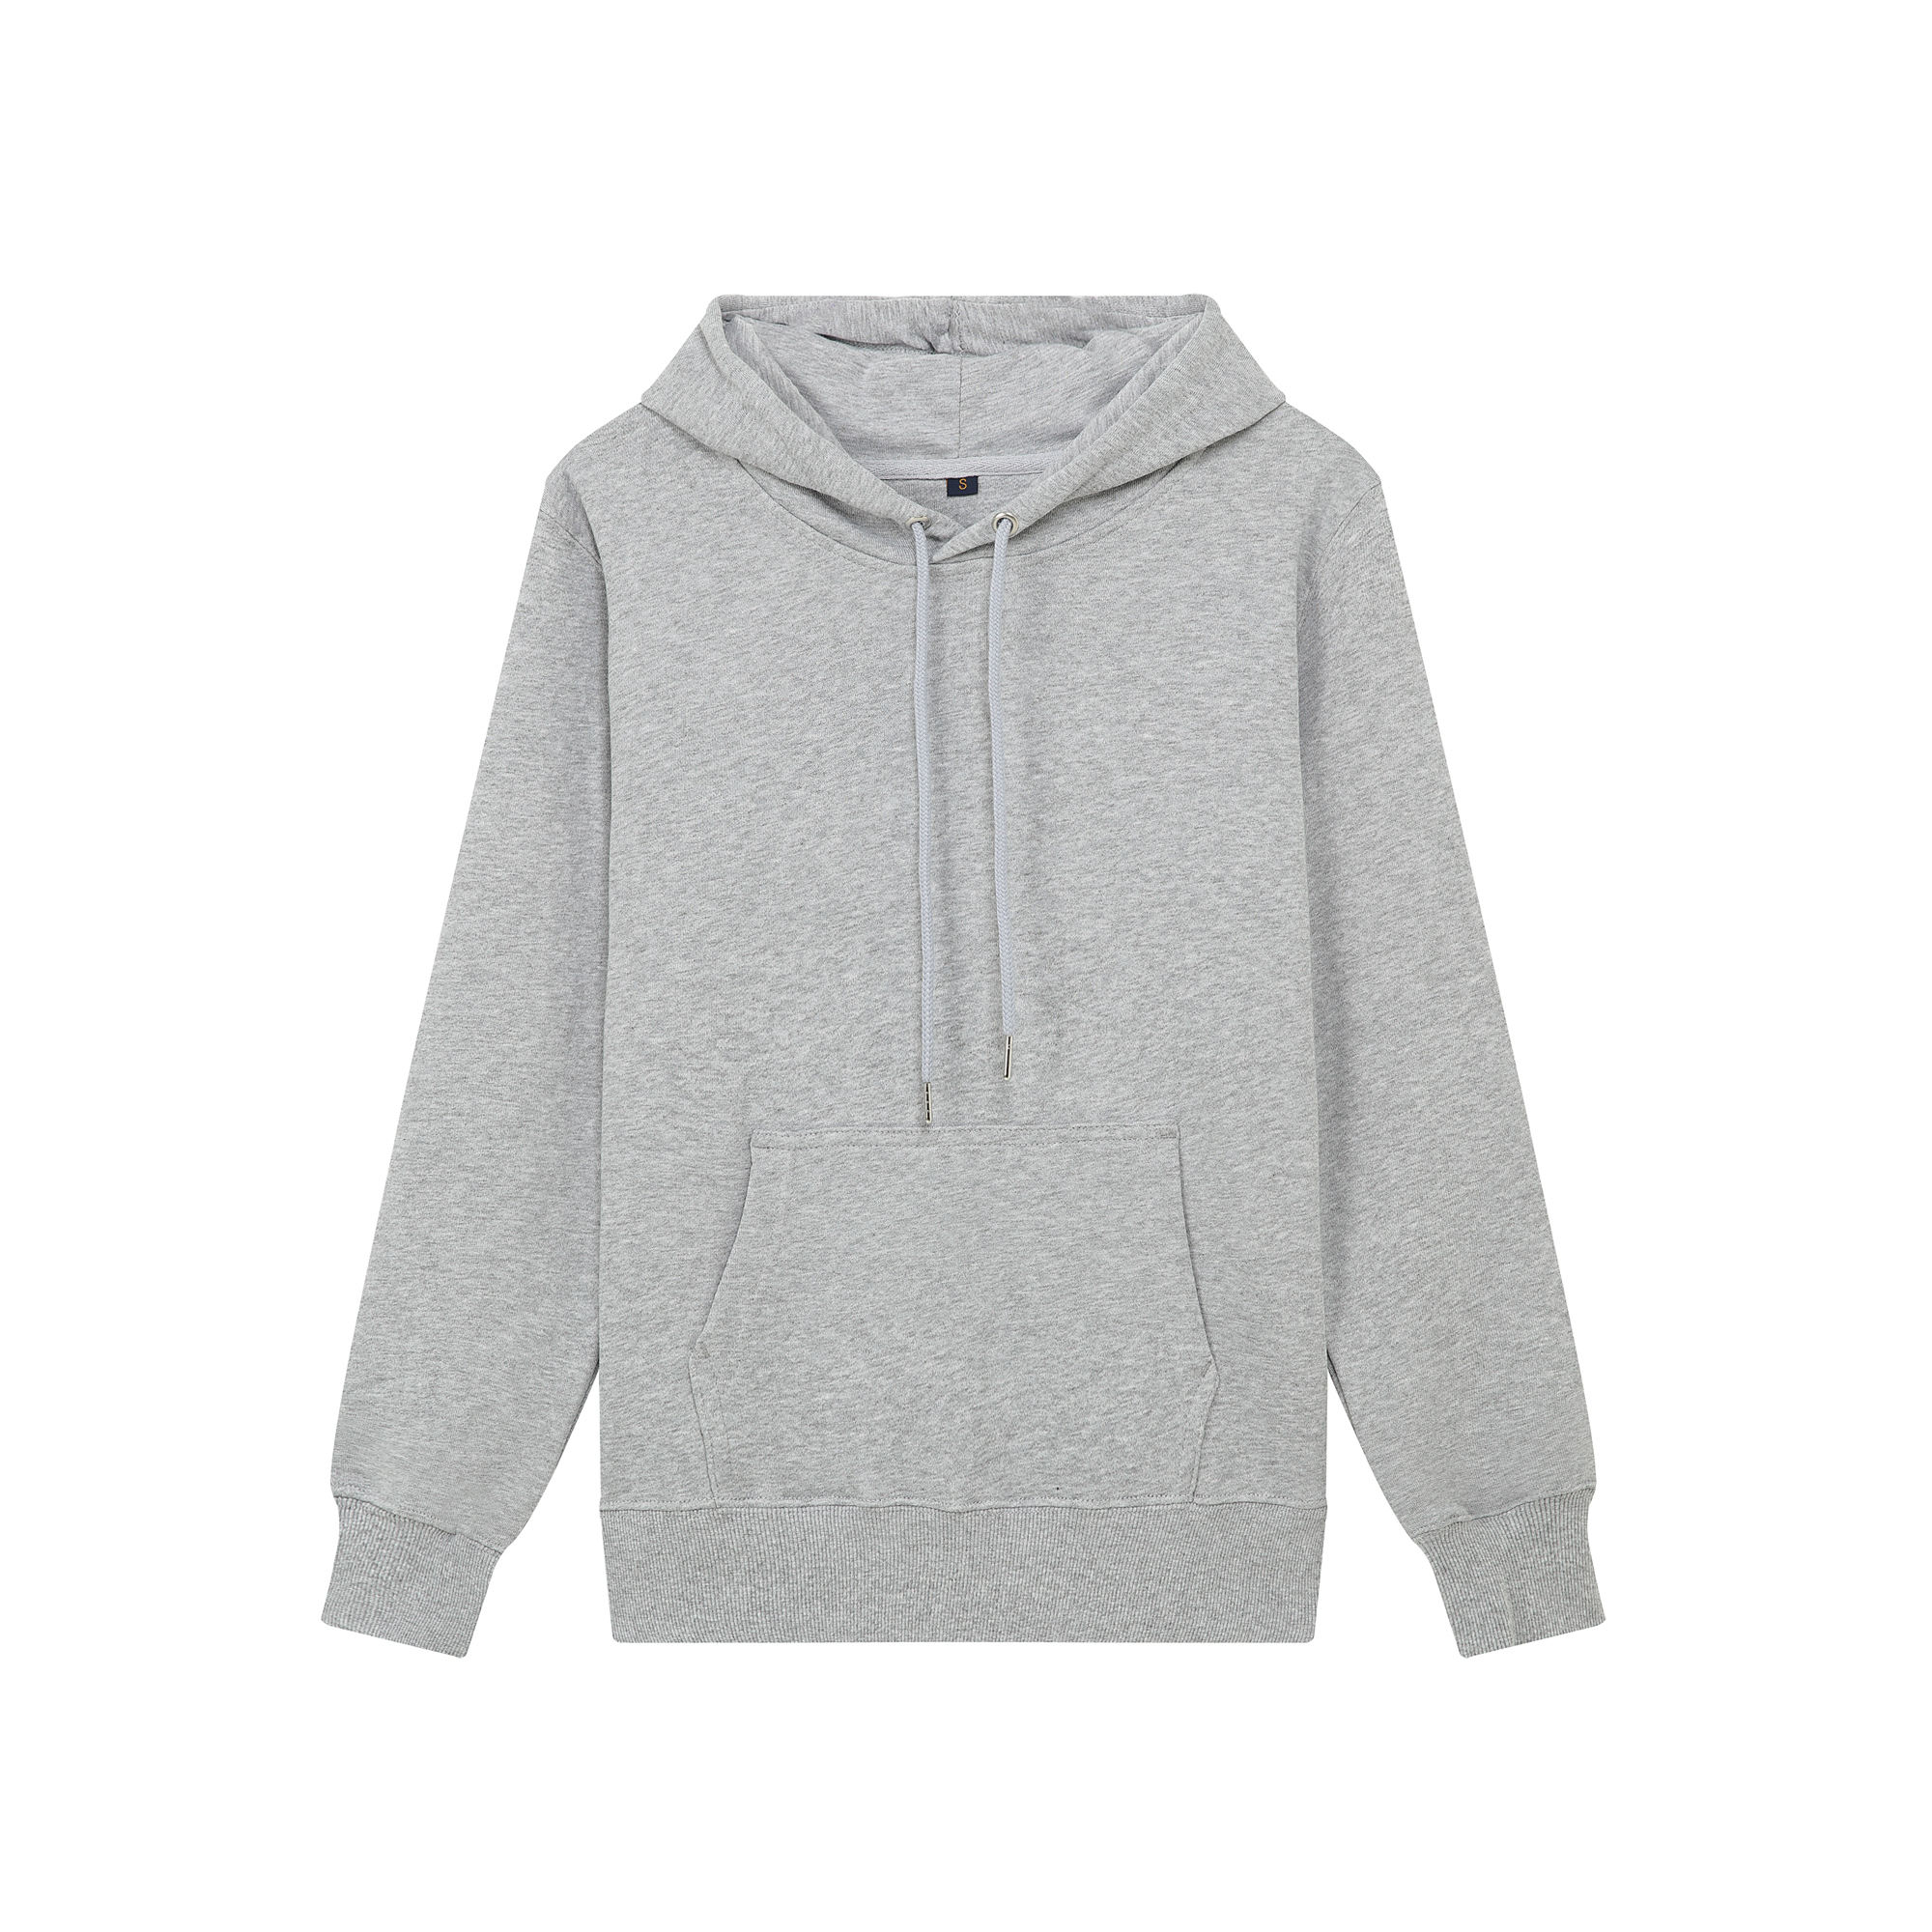 600Gsm casual hoodies aangepaste logo hoodie unisex groothandel effen hoodies in bulk